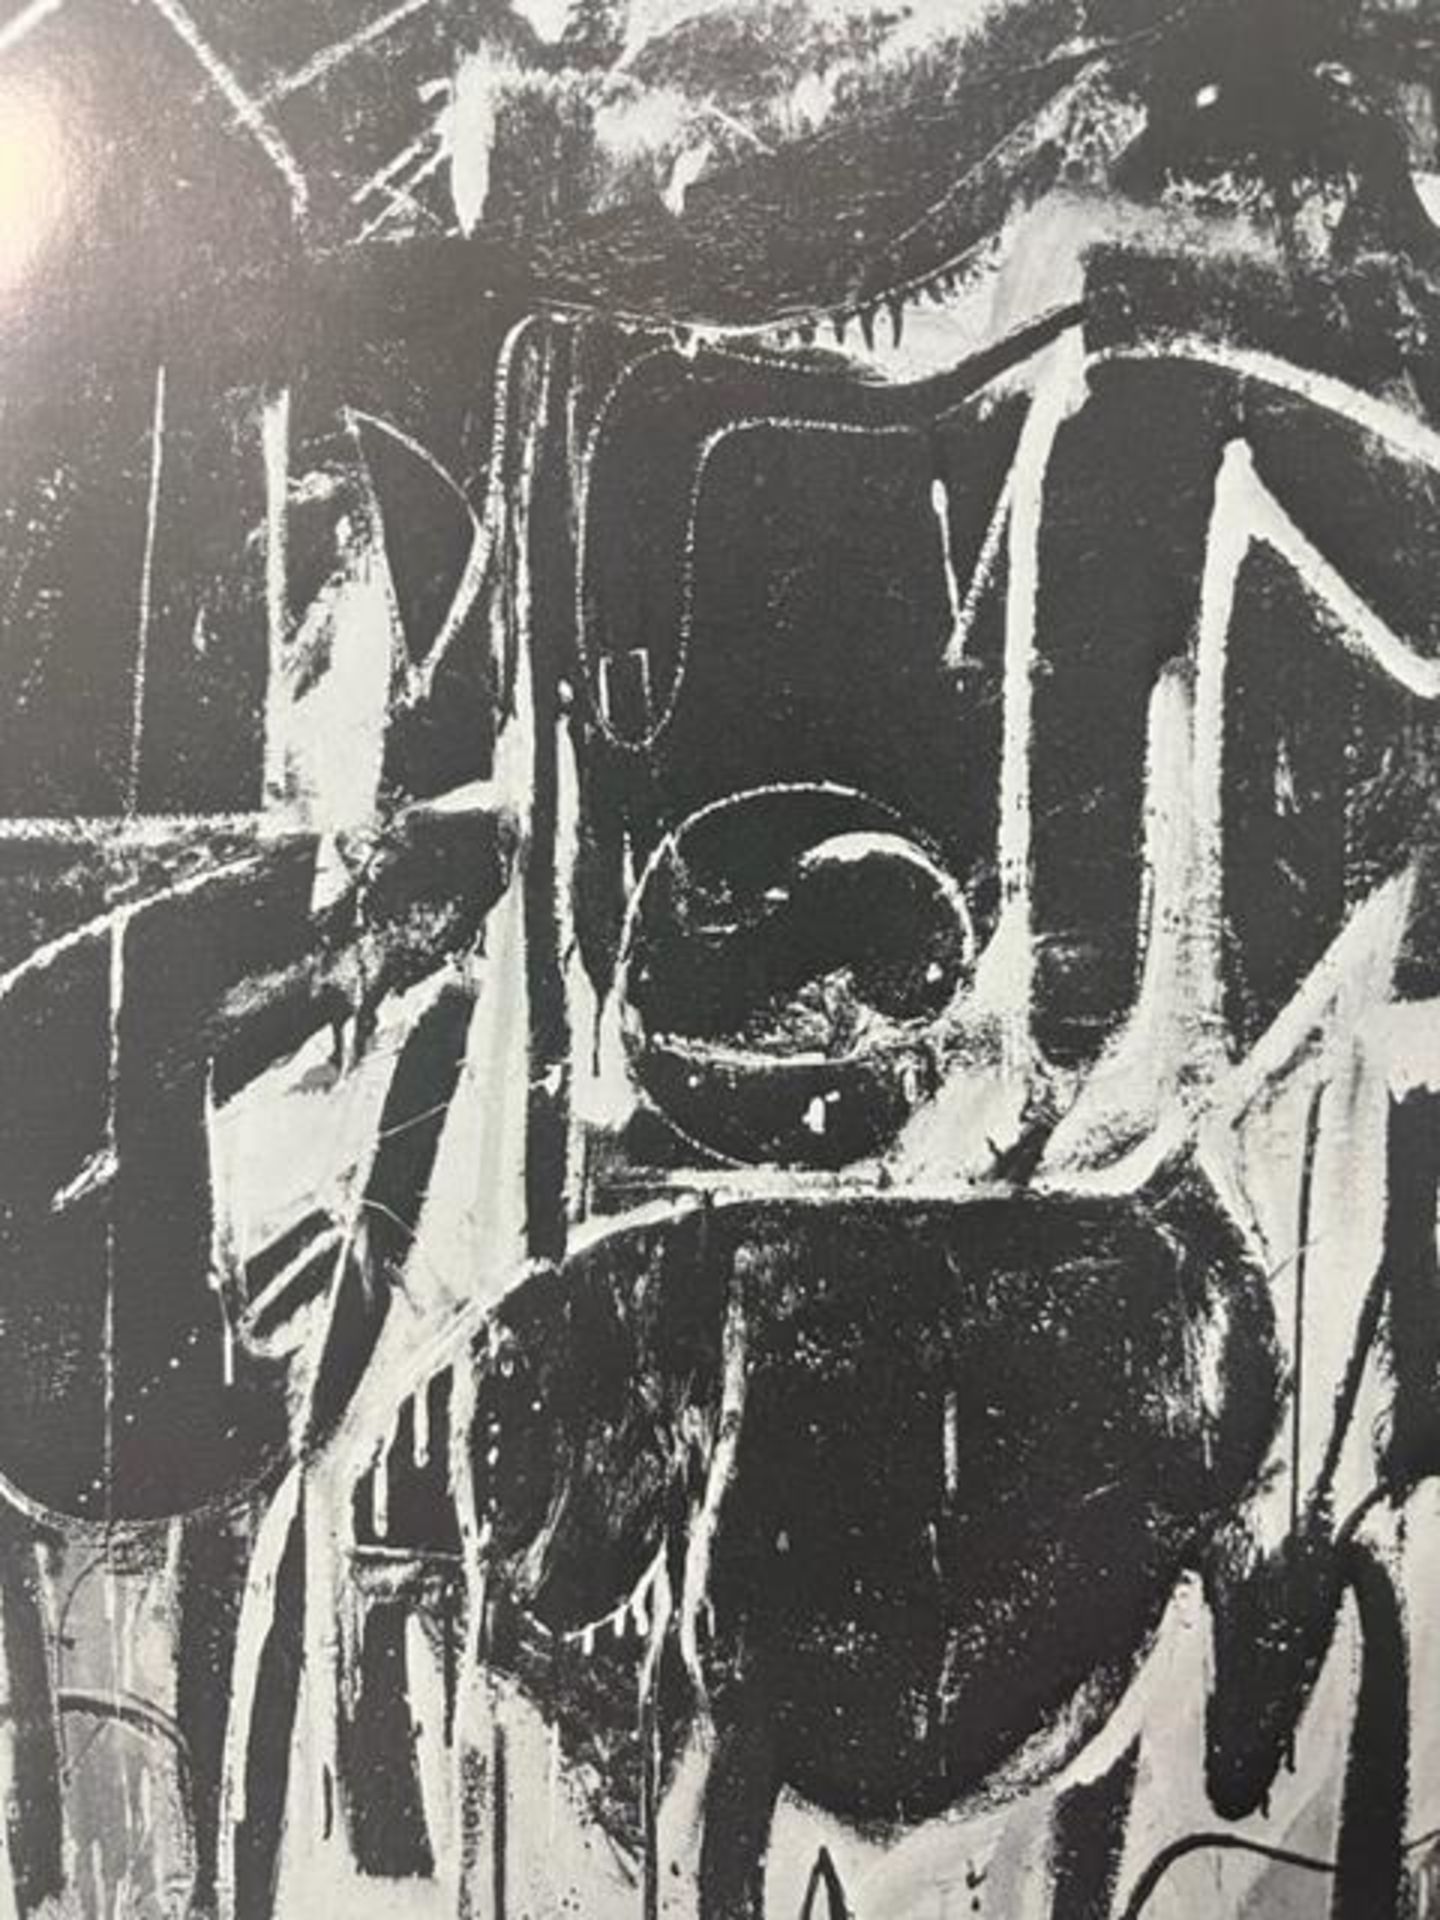 Willem de Kooning "Black Friday" Print. - Bild 5 aus 6